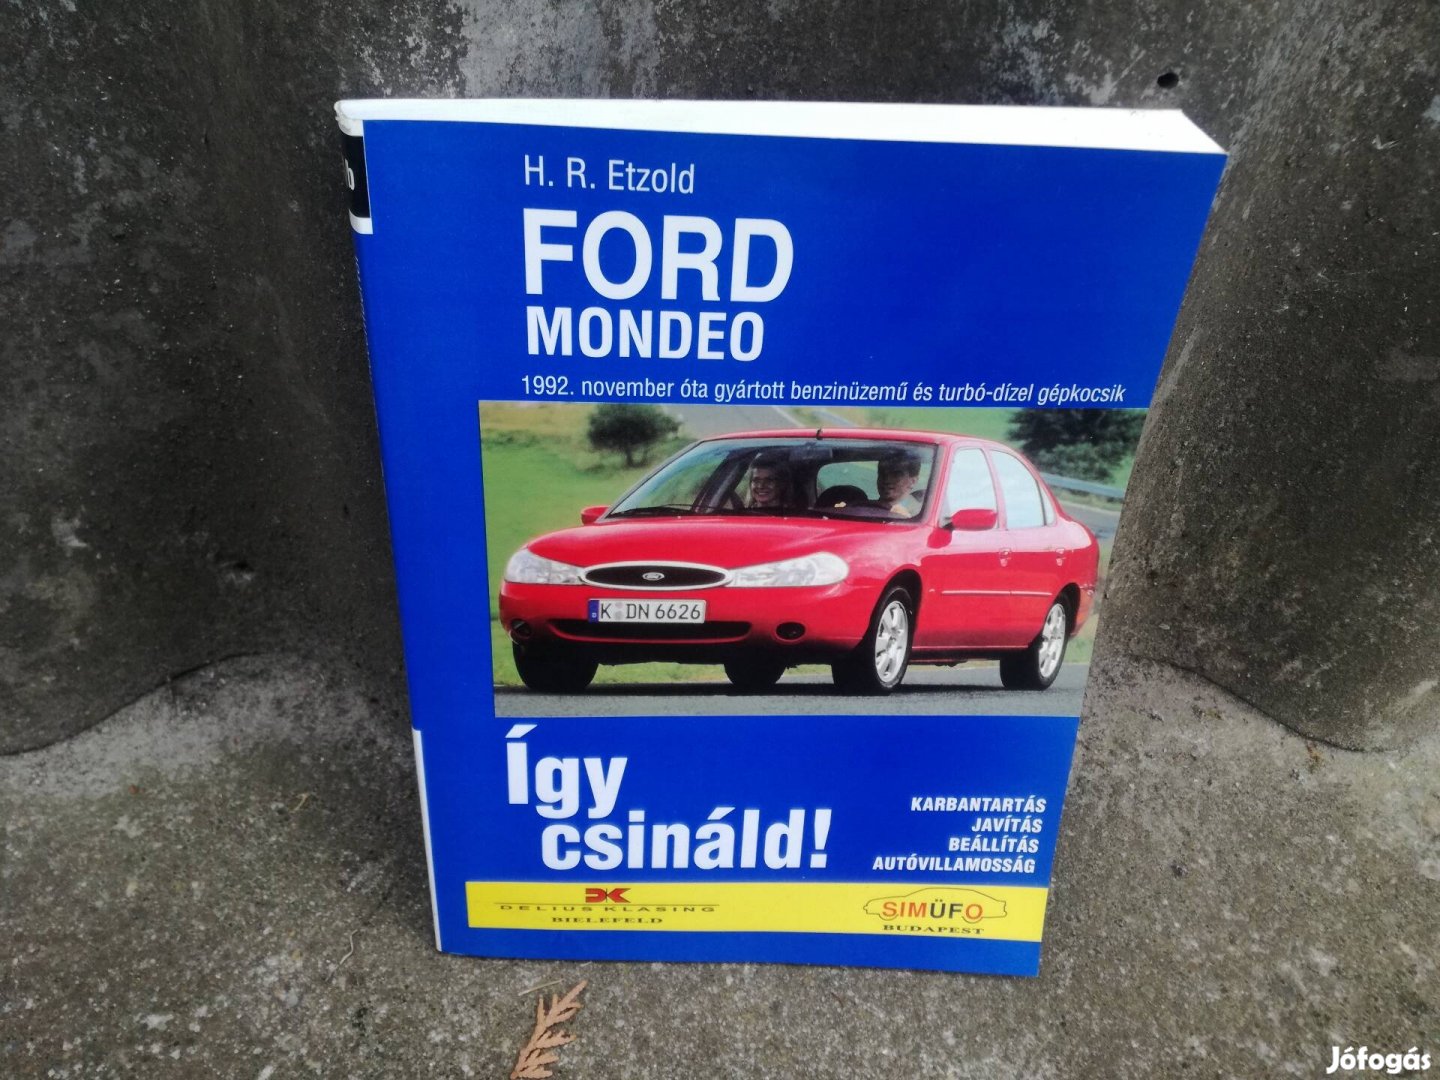 Ford Mondeo javítási könyv magyar nyelvű 